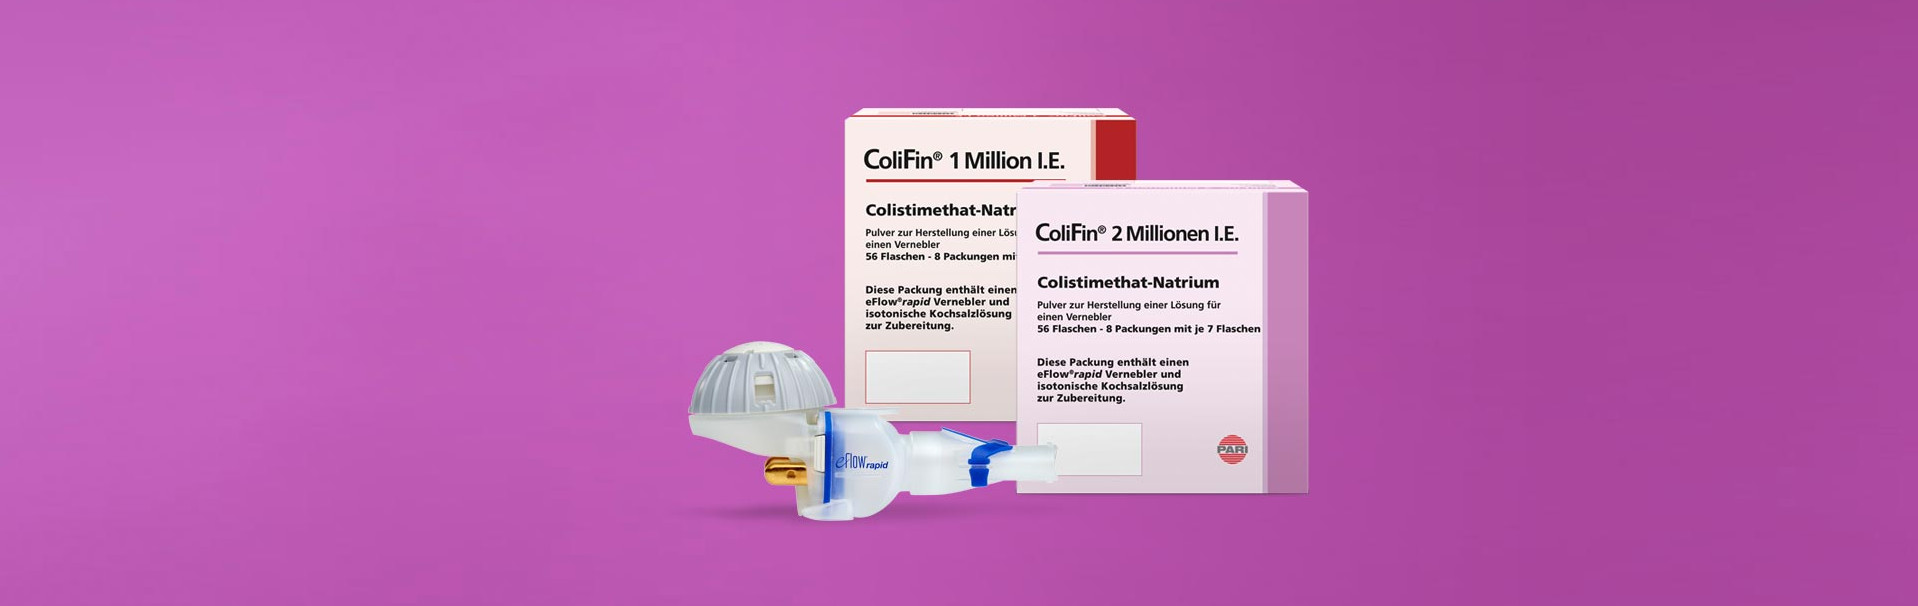 ColiFin 1 und 2 Millionen I.E.